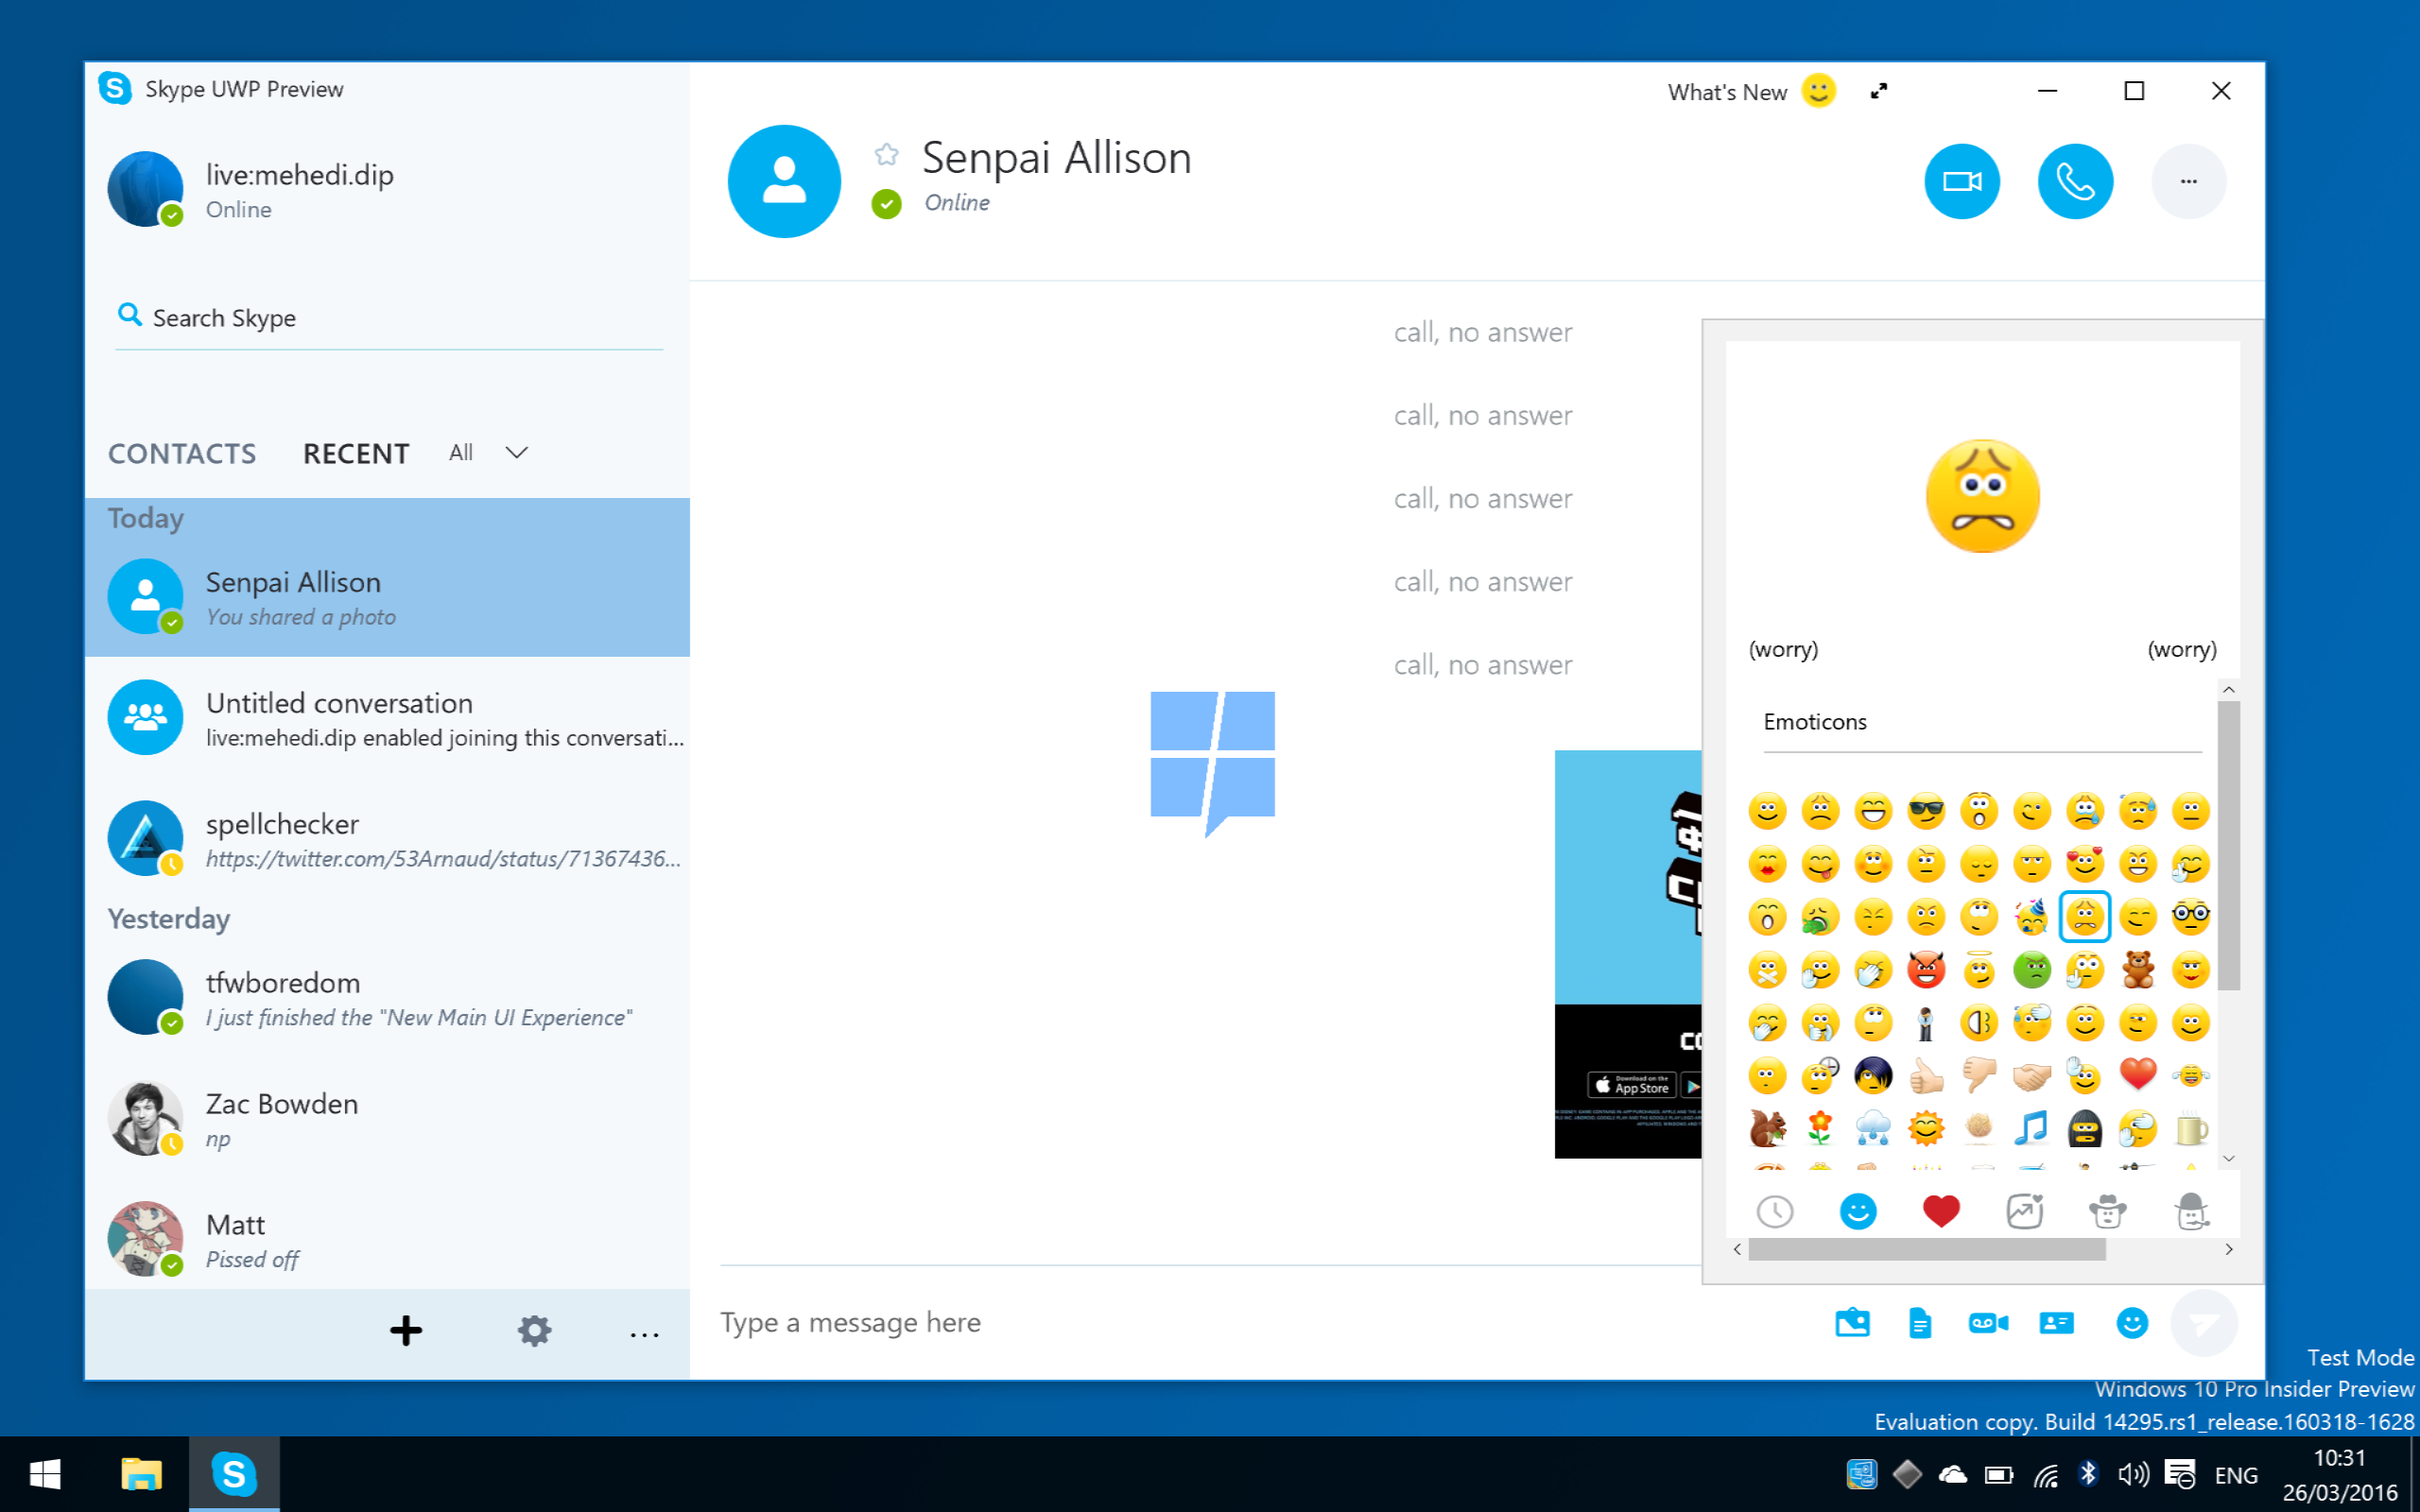 skype for business app for windows 10